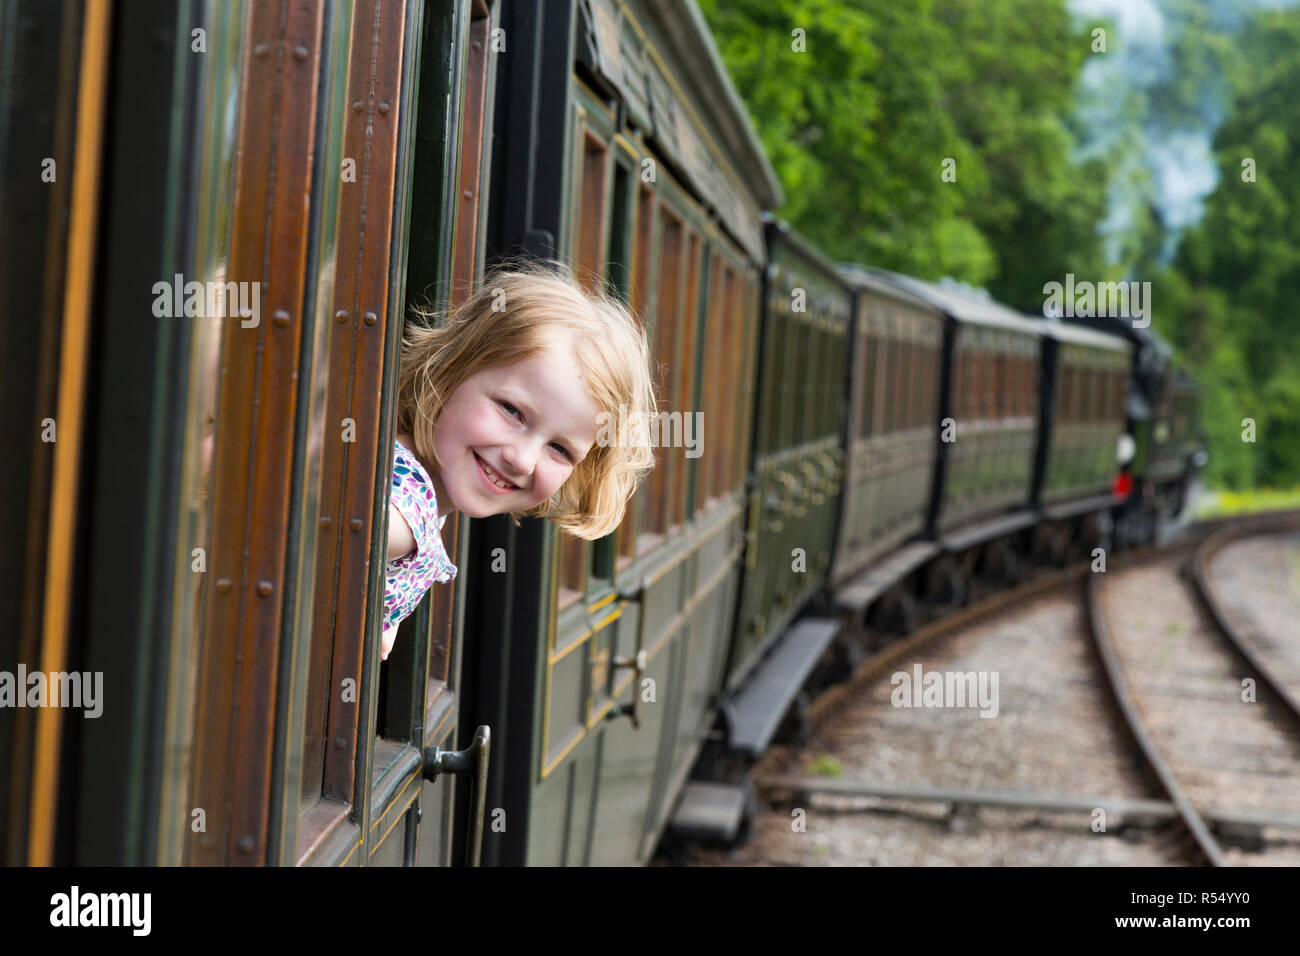 Passagier junge Mädchen im Alter von 8- 8 Jahre alt, lächelnd und Blick aus dem Fenster eines fahrenden Zuges Schlitten auf der Isle of Wight Steam Railway Line. UK. (98) Stockfoto